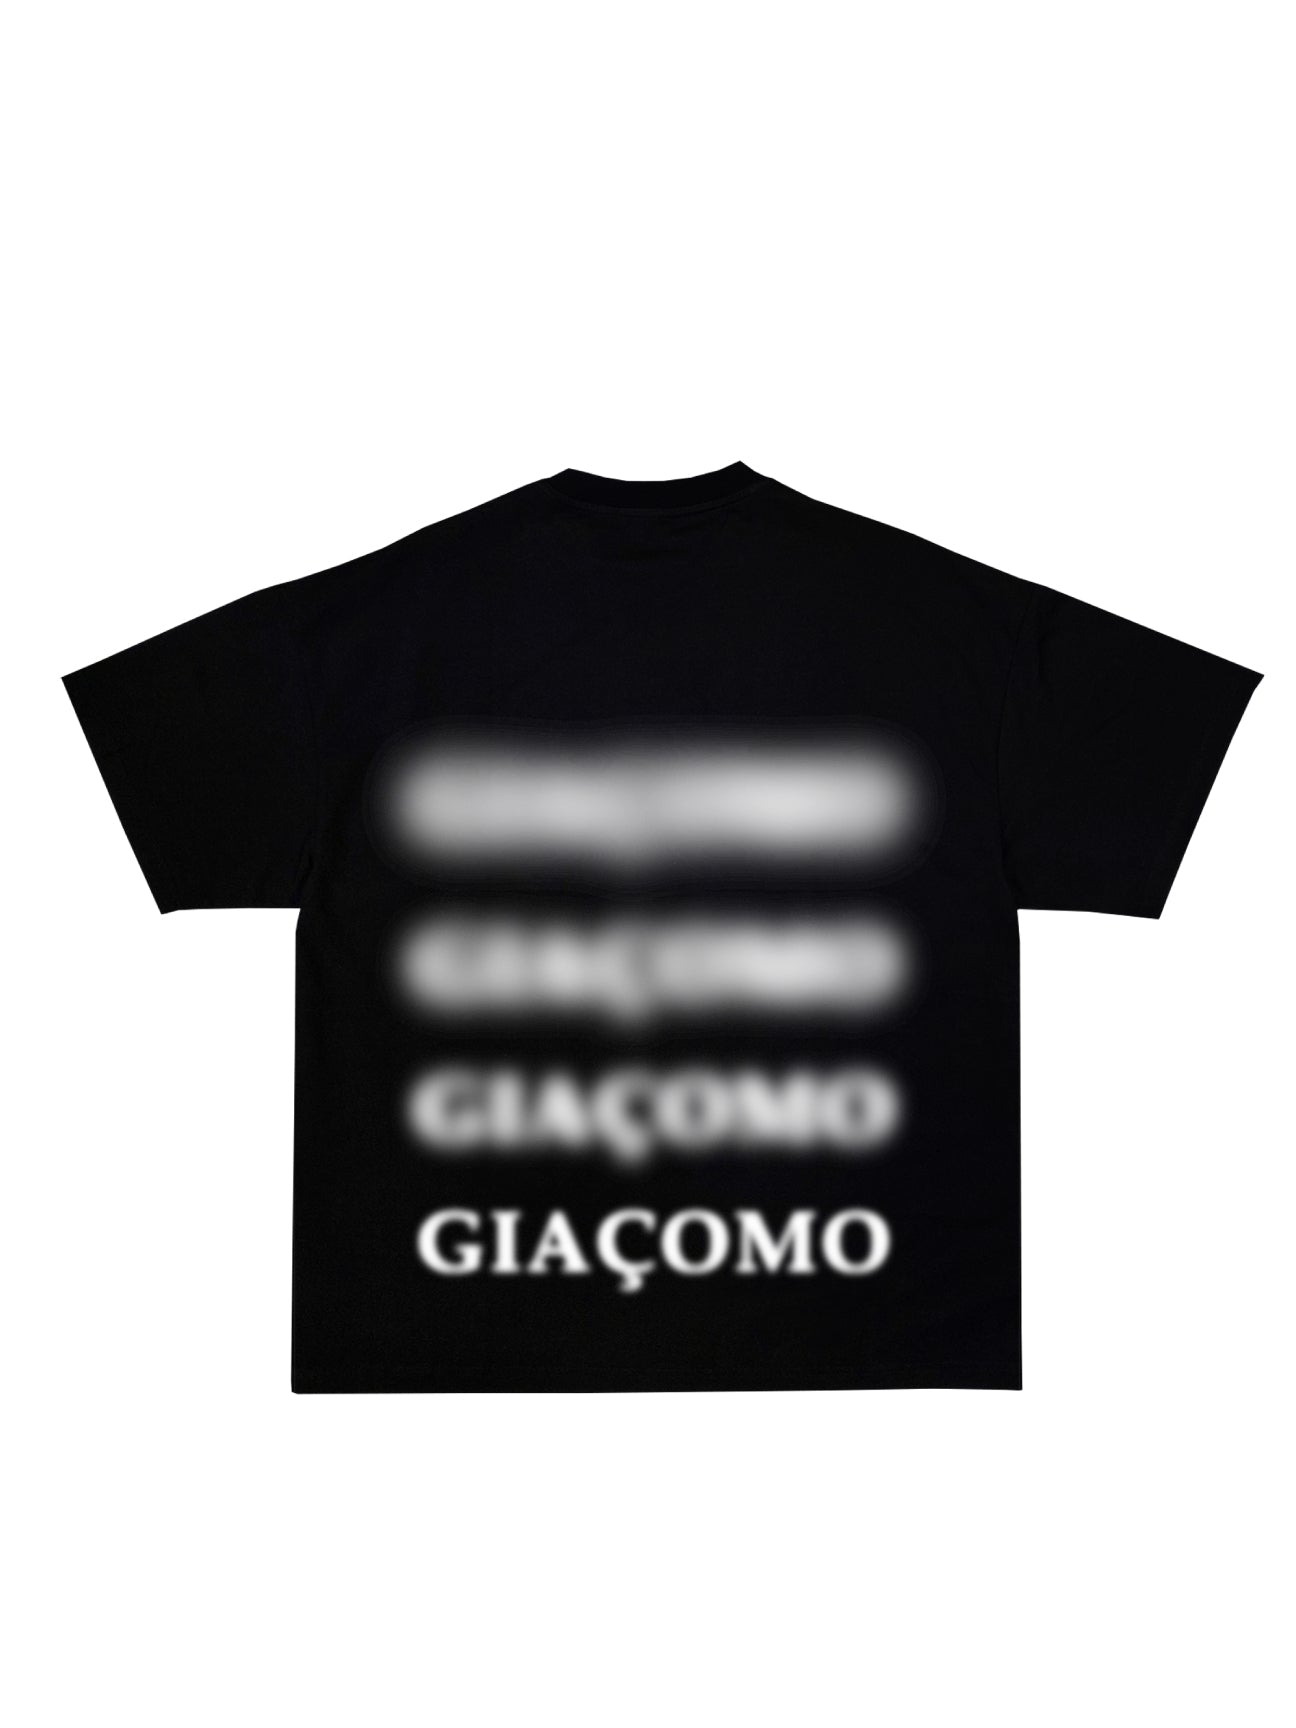 'Giaçomo' Floating Smoke Black T-Shirt